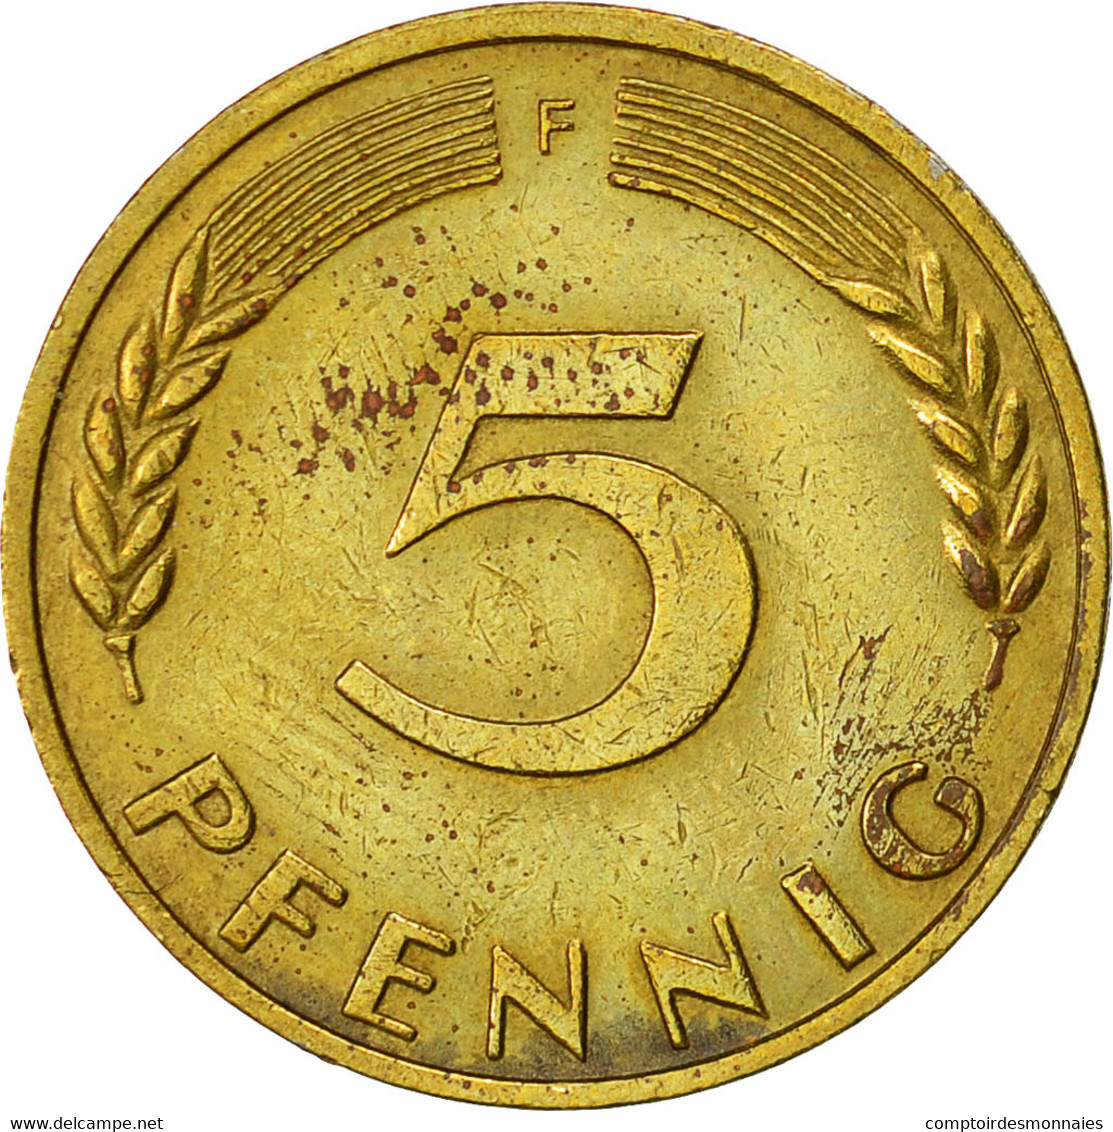 Monnaie, République Fédérale Allemande, 5 Pfennig, 1970, Stuttgart, TTB - 5 Pfennig